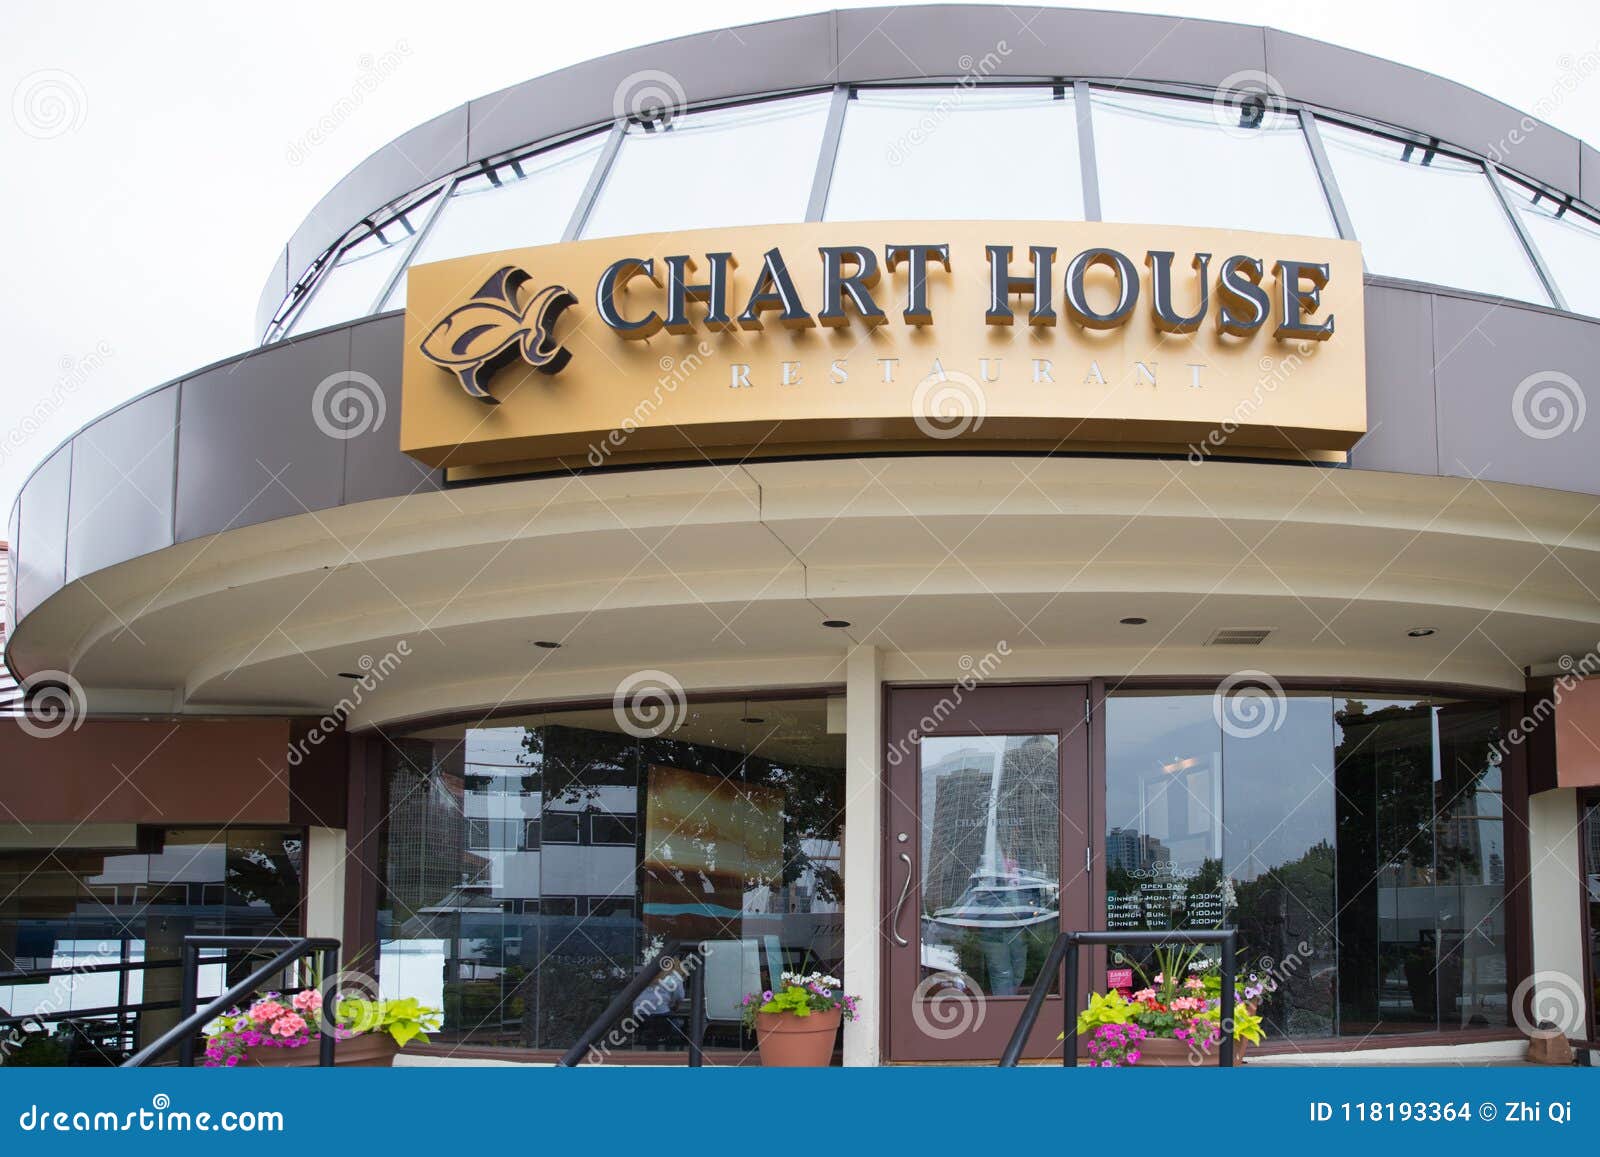 Chart House Restaurant Philadelphia